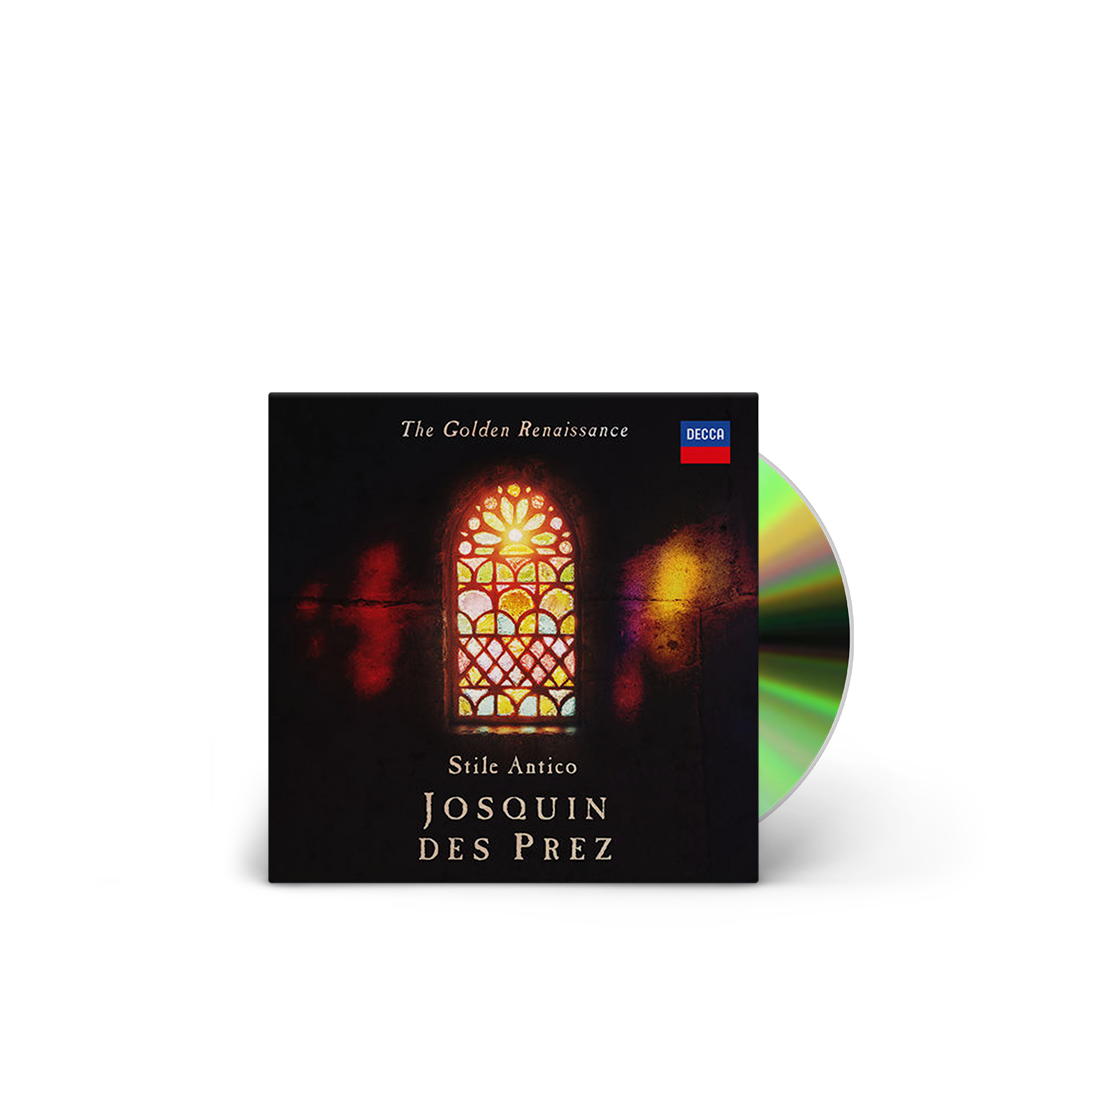 Stile Antico - The Golden Renaissance: Josquin des Prez CD